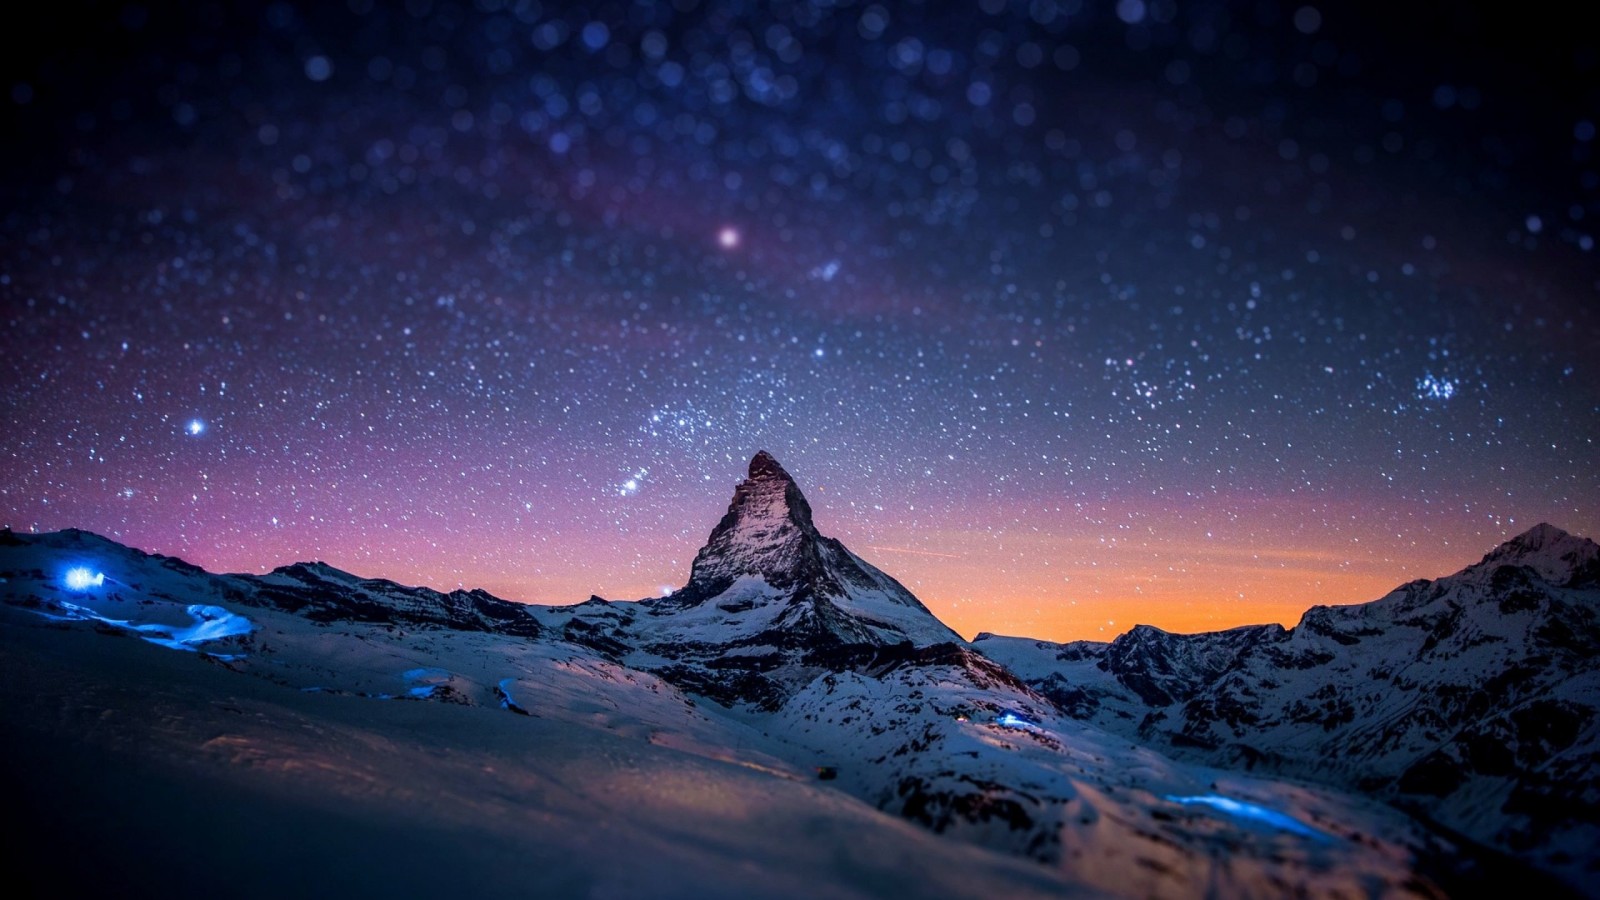 Starry Night Over The Matterhorn Wallpaper for Desktop 1600x900